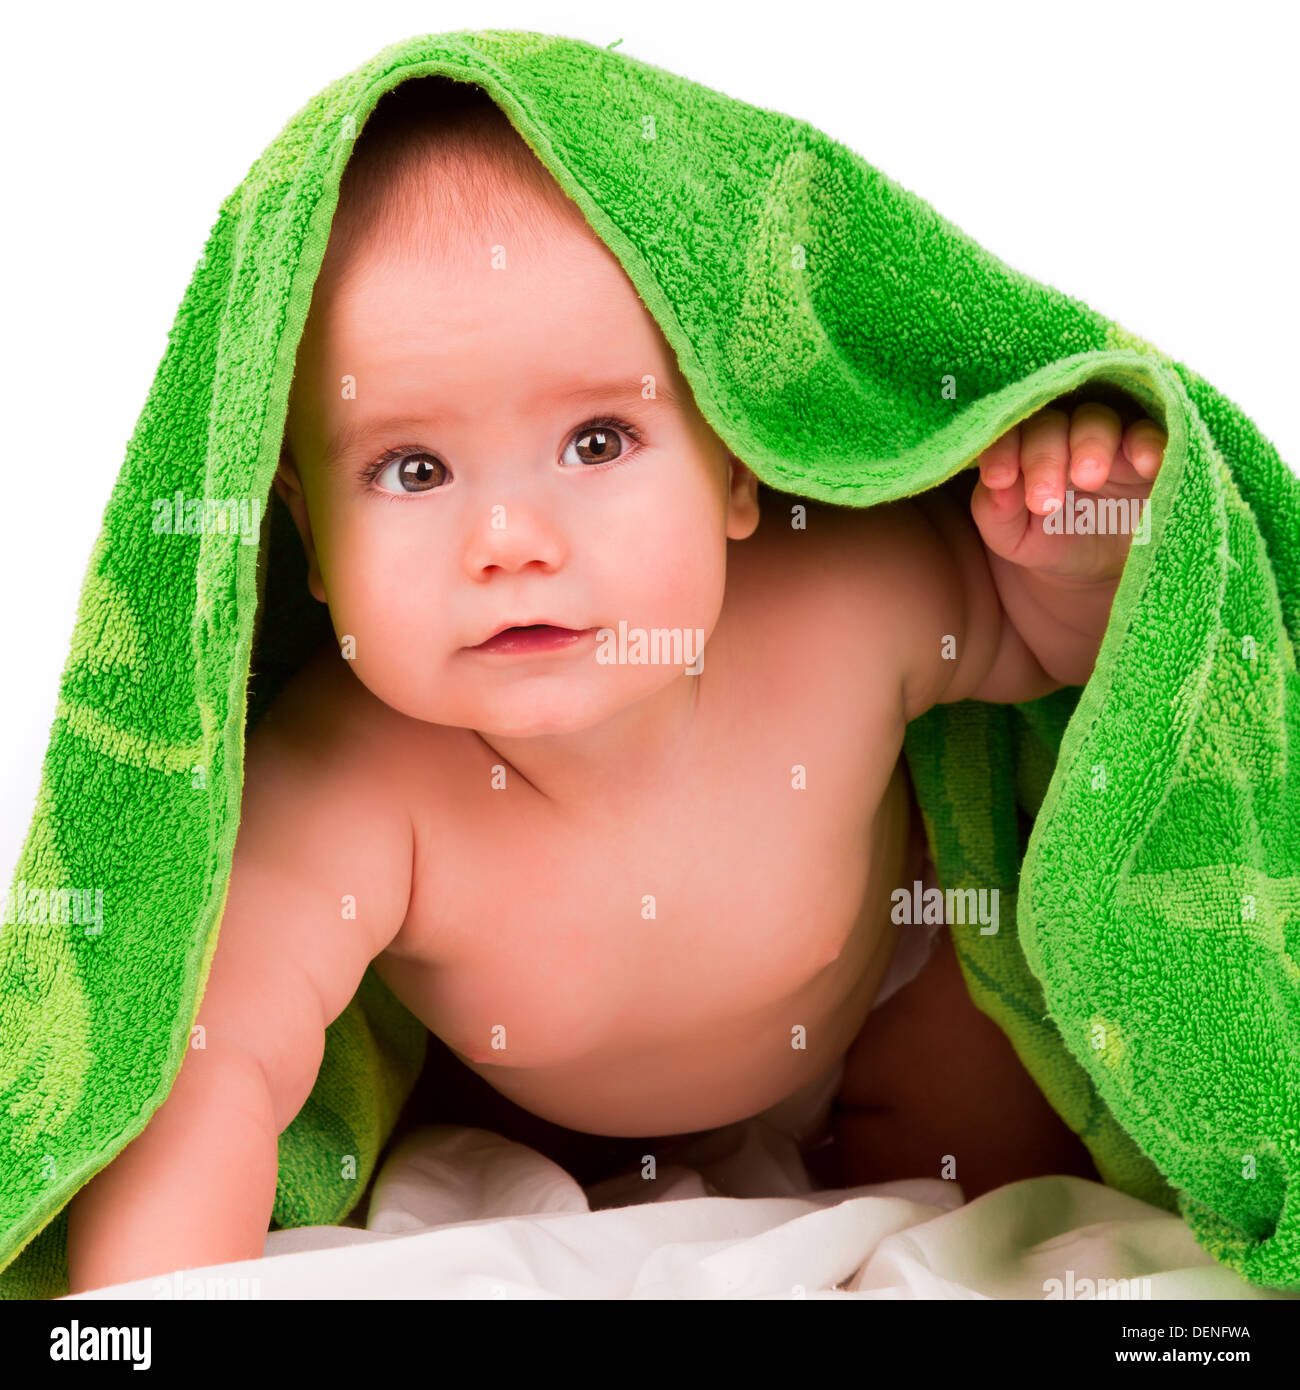 Curioso bebé mira desde debajo de una toalla verde Foto de stock